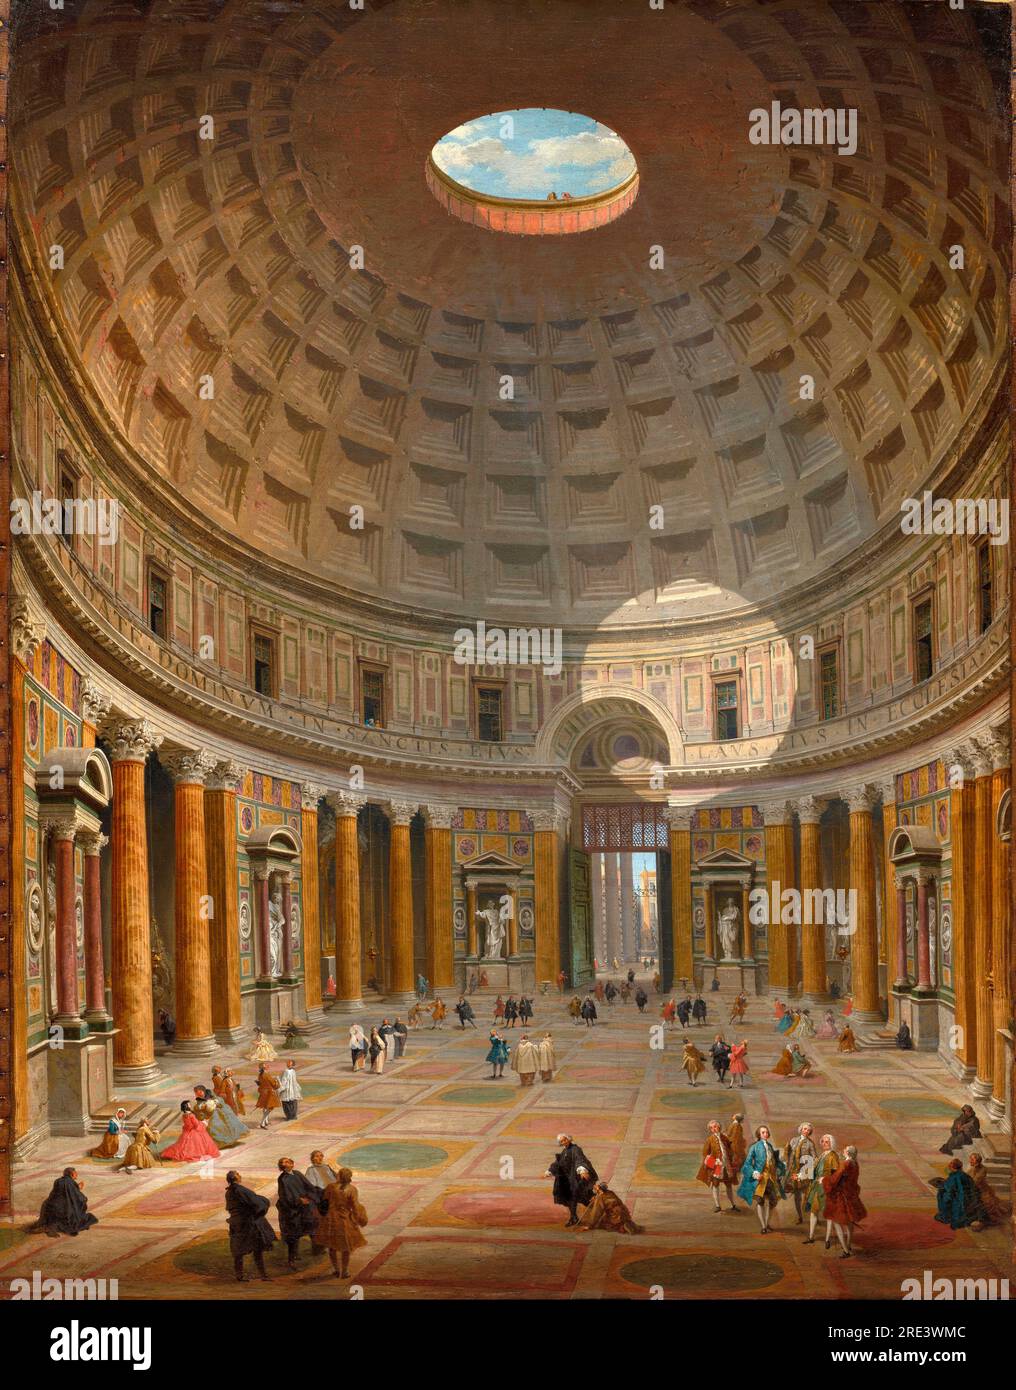 Das Innere des Pantheons, Rom von Giovanni Paolo Panini im Jahr 1747 - das Pantheon wurde als Tempel unter dem römischen Kaiser Hadrian um das Jahr 125 v. Chr. errichtet und wurde 609 eine christliche Kirche. Anfang der 1700er Jahre fand eine bedeutende Restaurierung statt, eine Zeit, in der die frühen christlichen Denkmäler wieder in den Mittelpunkt gerückt wurden. Die Stätte war ein wichtiges Denkmal der Antike, eine aktive Kirche, und ihr Portico, durch die Tür sichtbar, hielt die wichtigste Kunstmesse in der Stadt. Panini zeigt die Komplexität dieses öffentlichen Raums, indem es ausländische Touristen, lokale Kirchenbesucher, römische Adlige und Künstler repräsentiert, die sich unter sie mischen Stockfoto